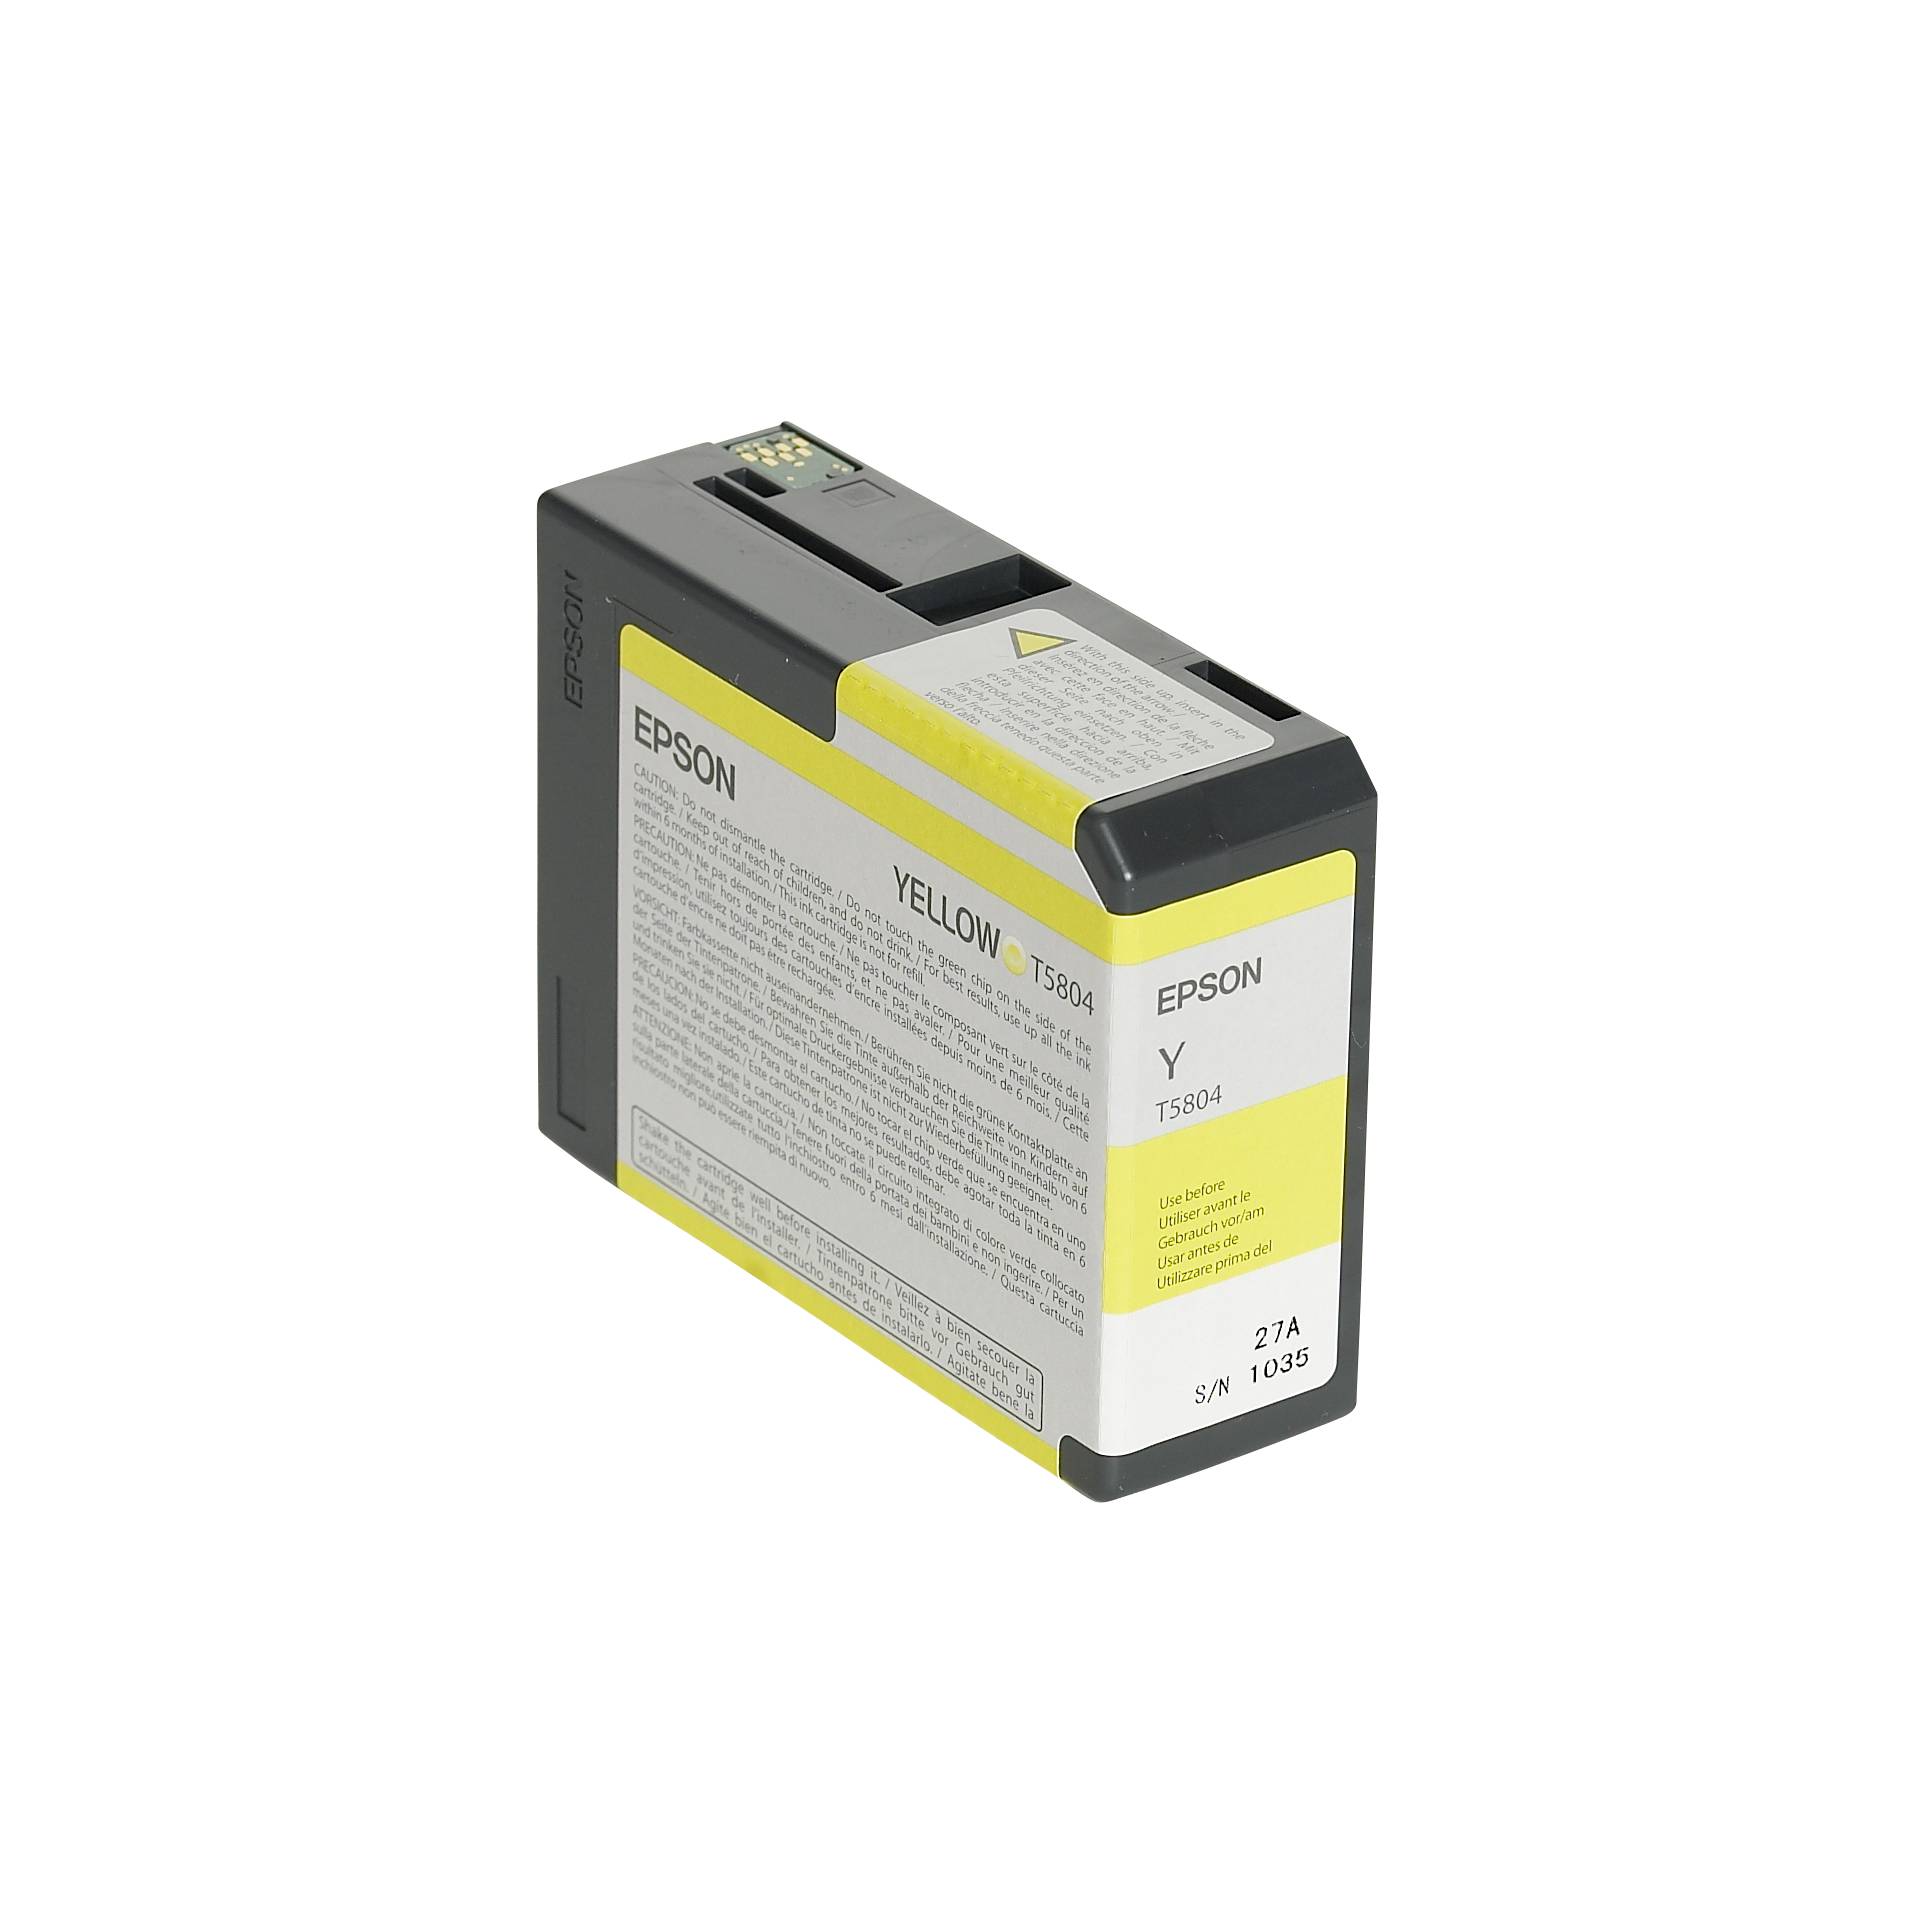 Epson cartuccia     giallo T 580  80 ml              T 5804